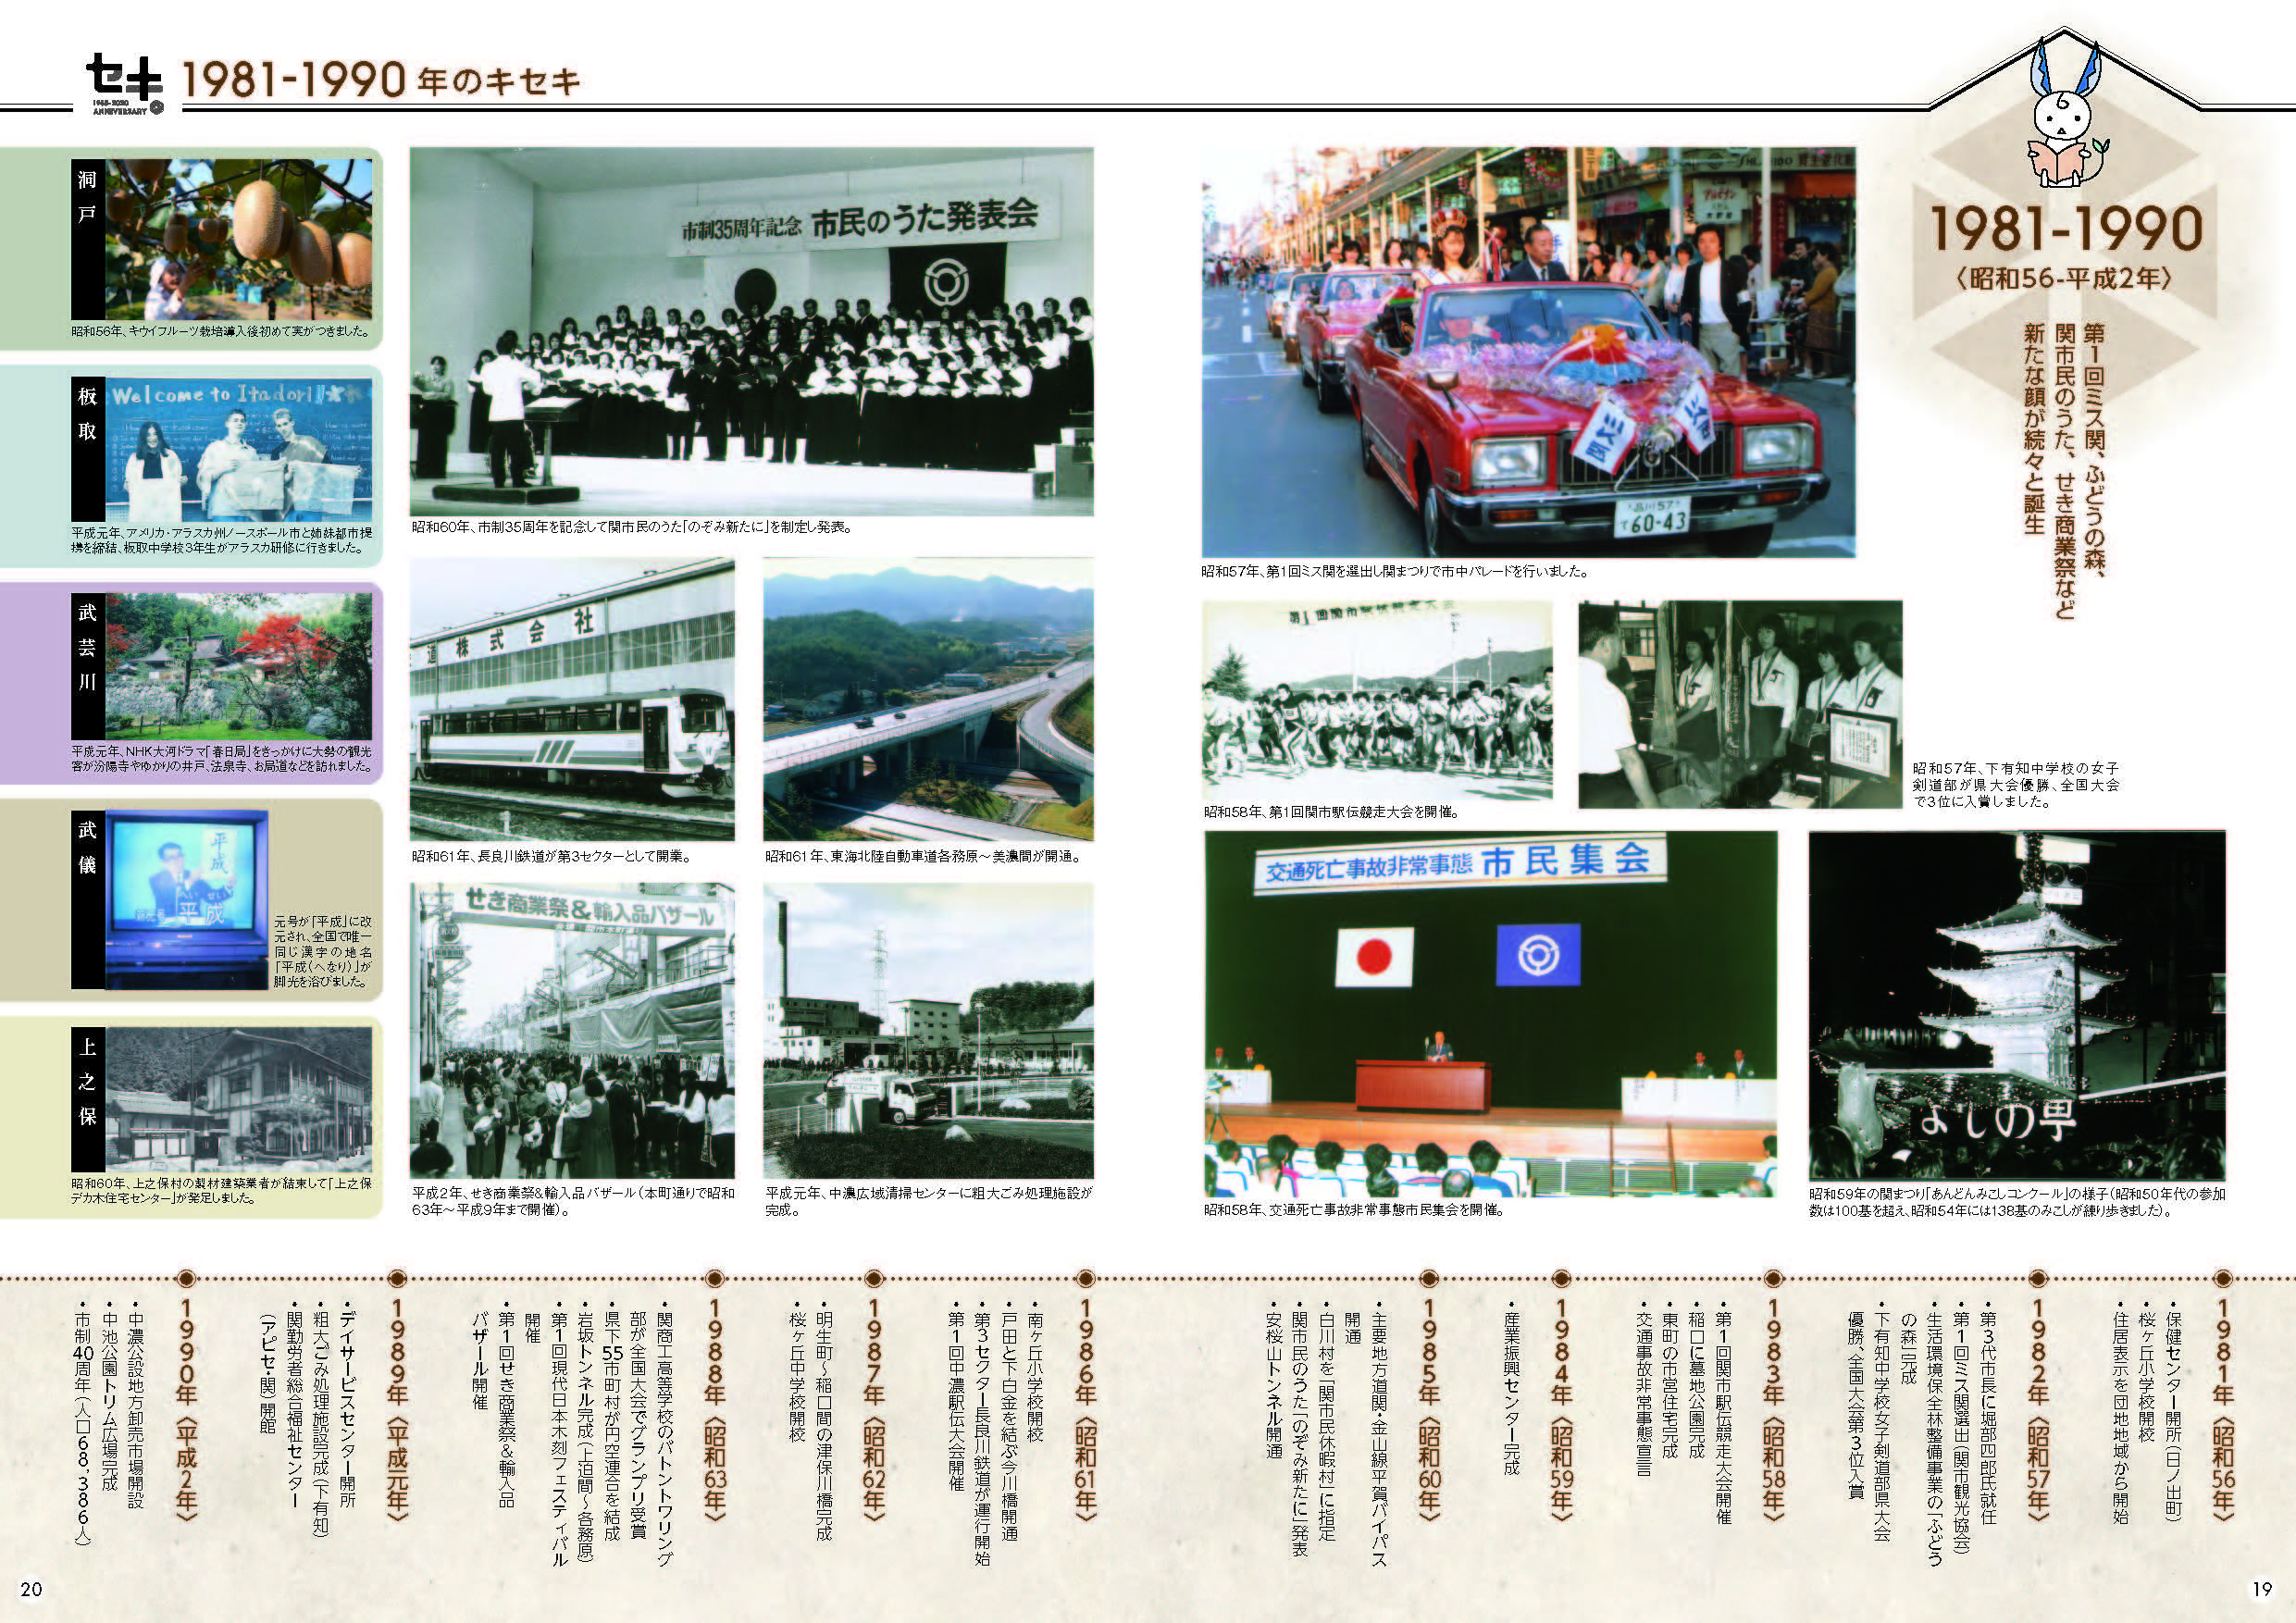 関市70年の歩み(1950-2010年)4